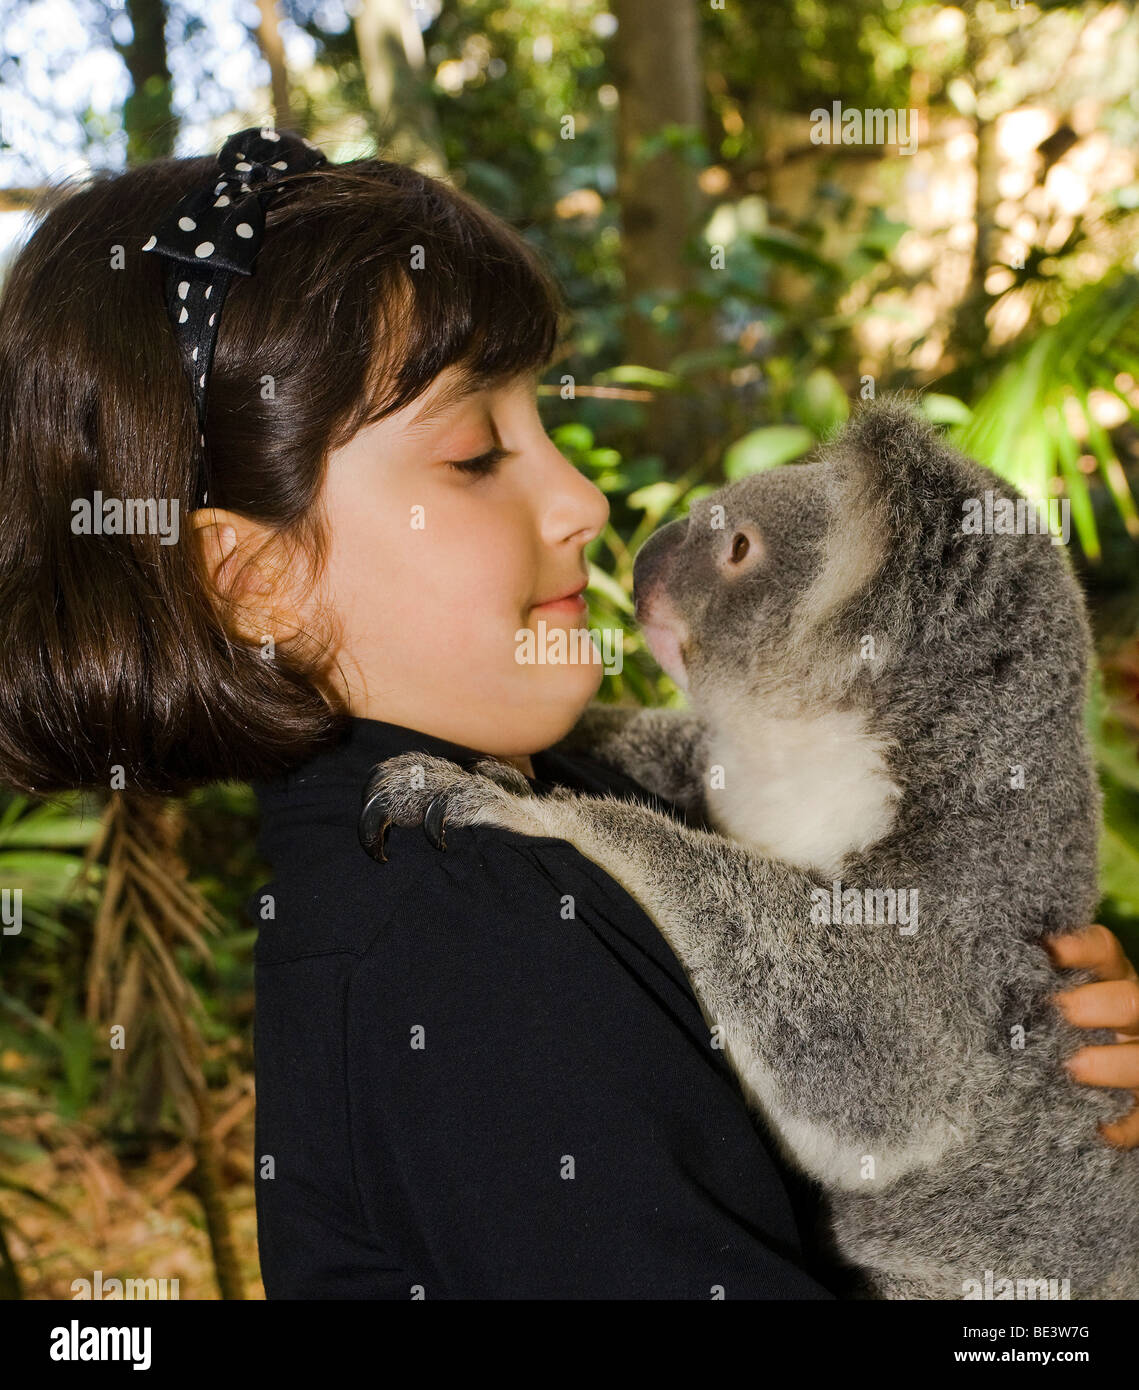 8 anno vecchia ragazza affacciata in corrispondenza dei Koala di Lone Pine Koala Sanctuary, Brisbane Foto Stock